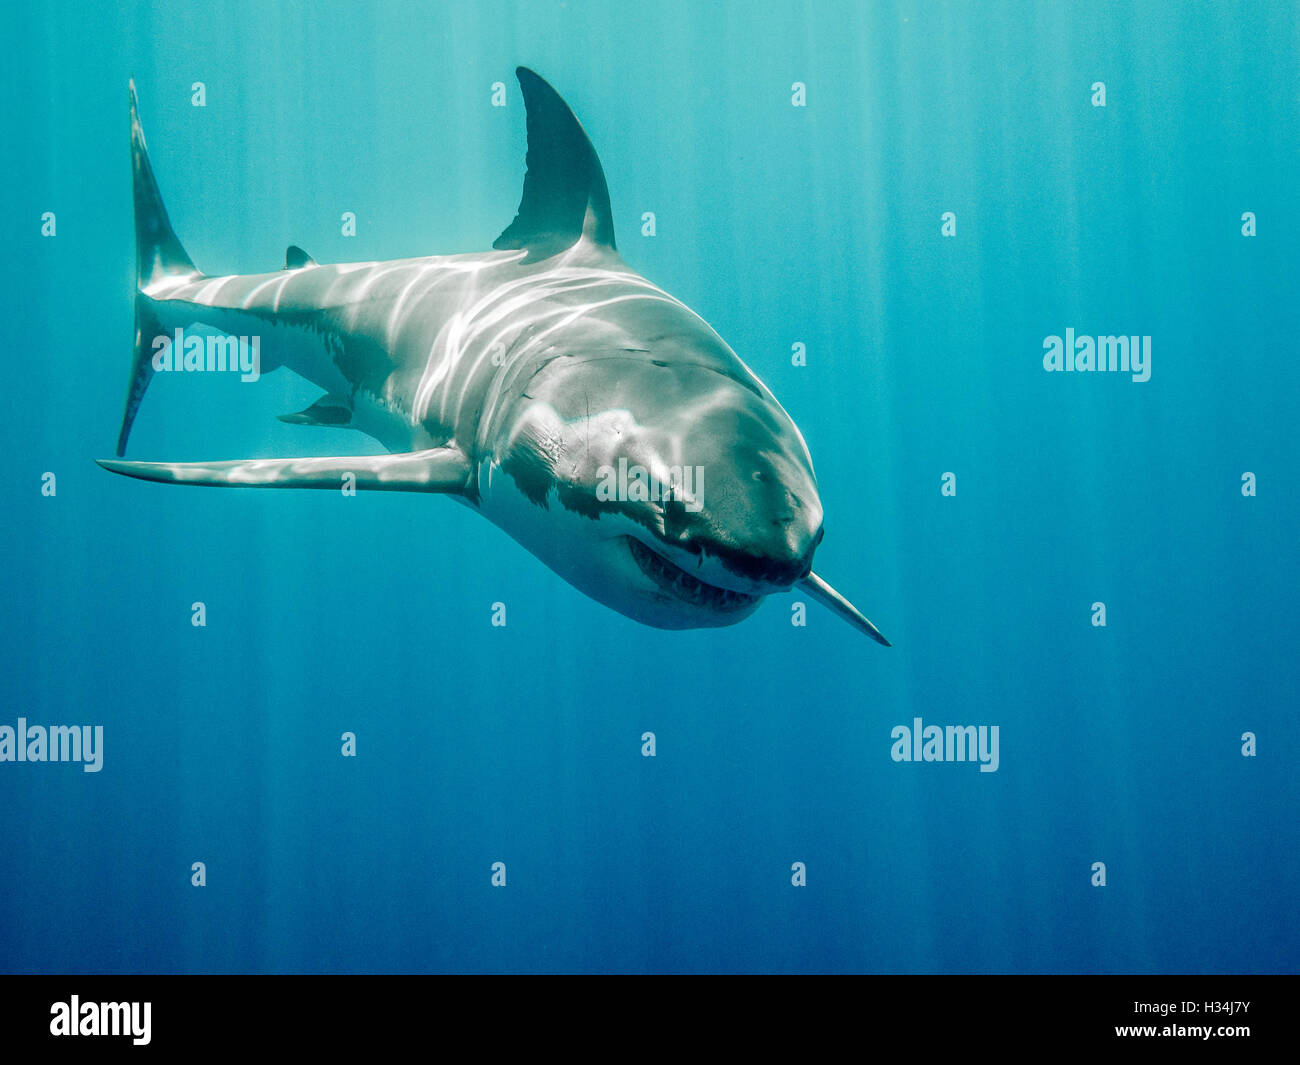 Grand requin blanc qui ressemble à Bruce de Le Monde de Nemo film dans le bleu de l'océan Pacifique à Guadlupe Île du Mexique Banque D'Images